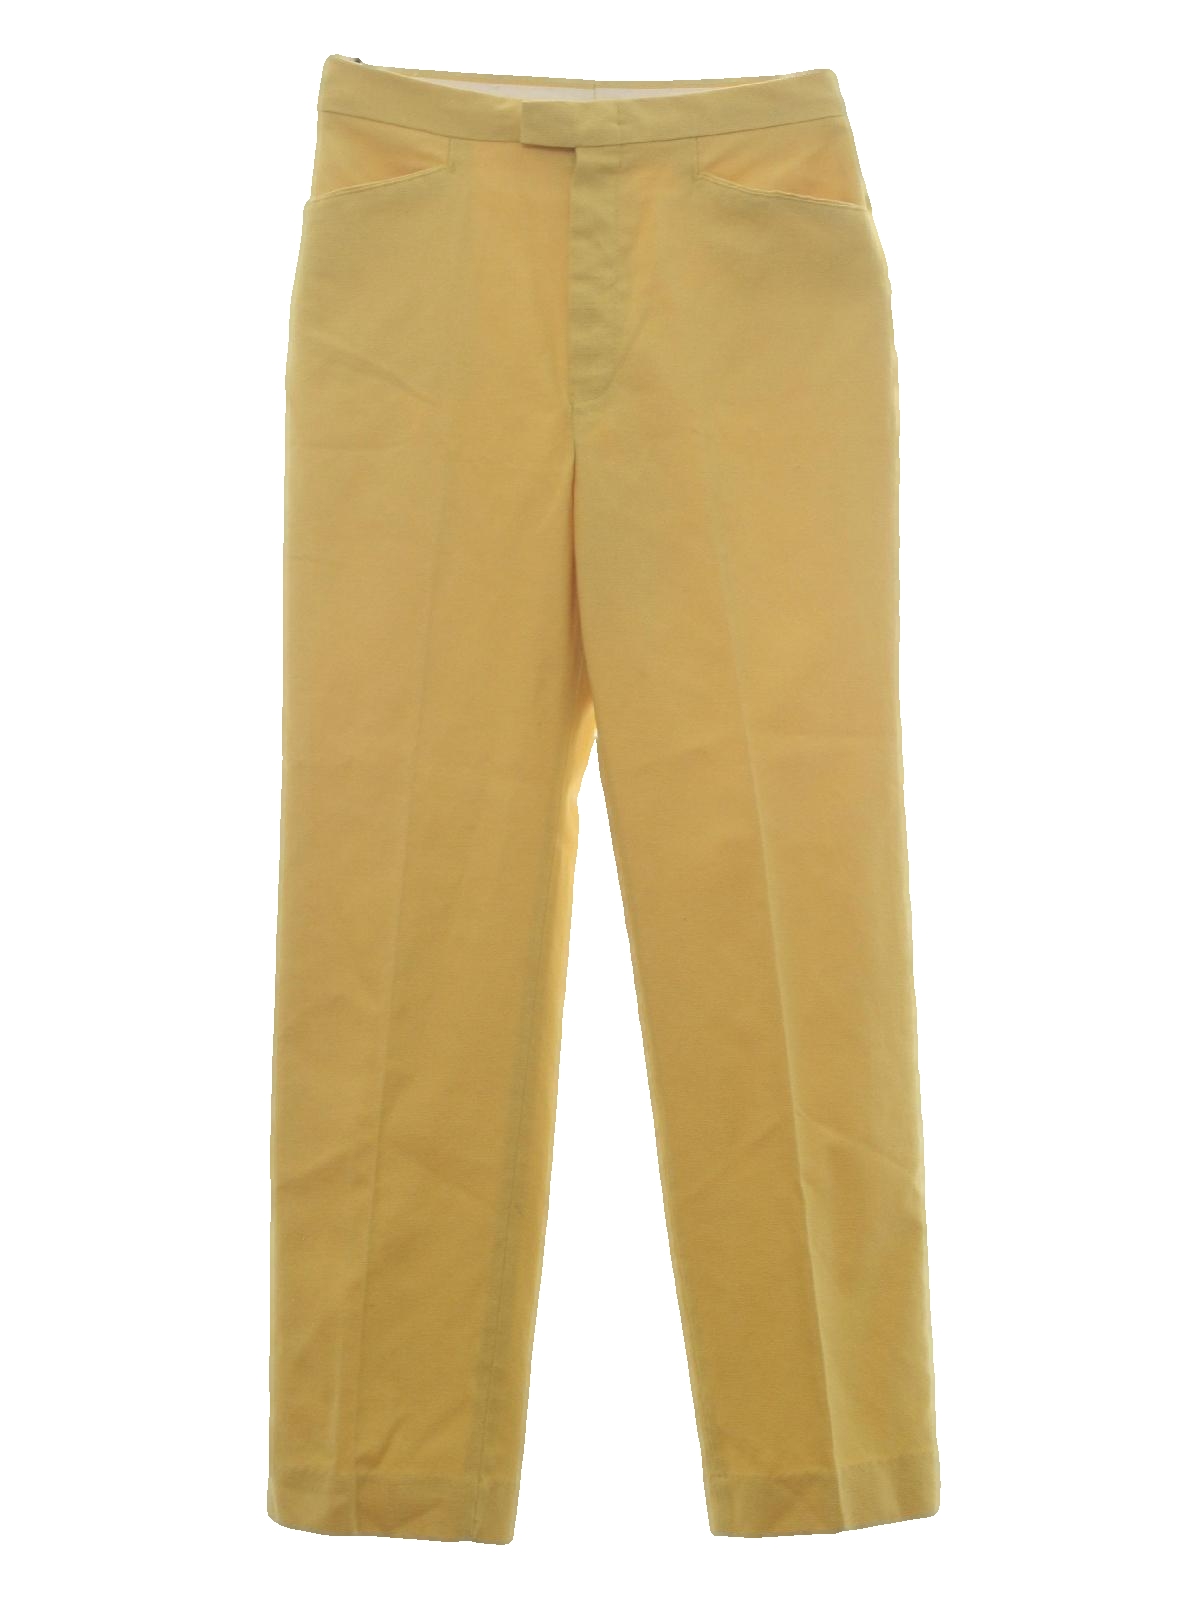 Vintage 60s Pants: 60s -Levis- Womens light harvest gold cotton blend ...